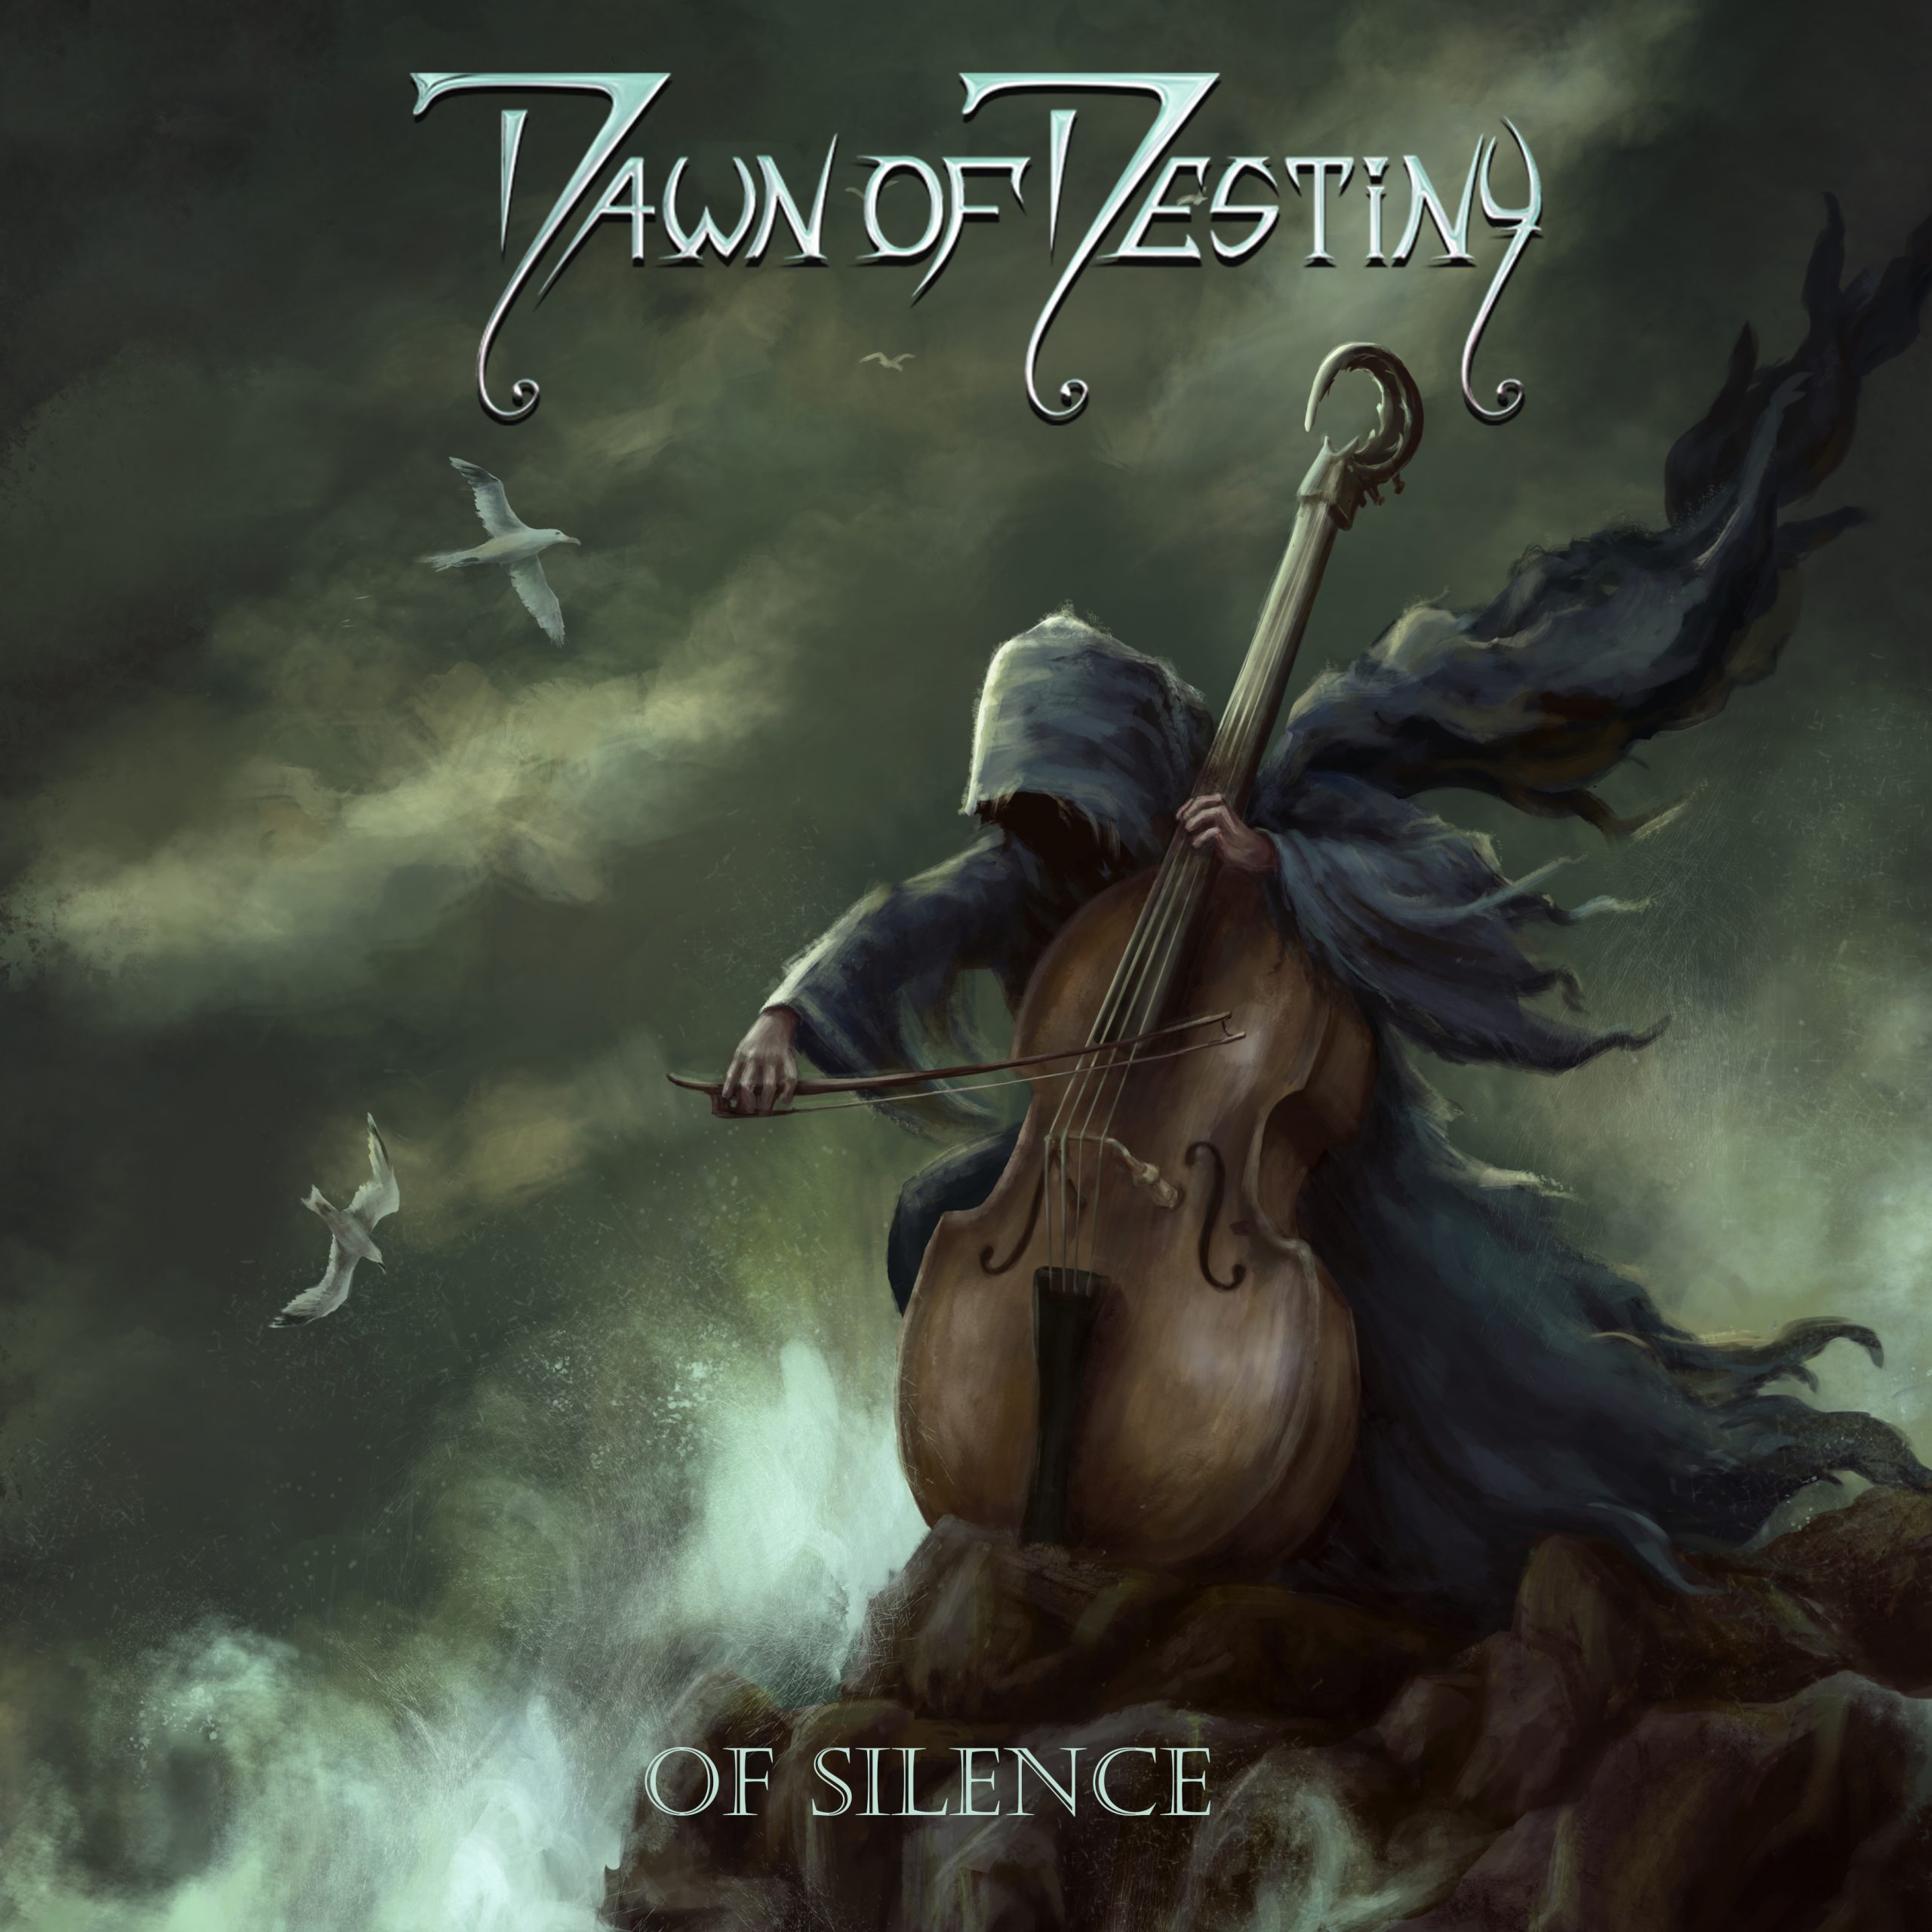 dawn-of-destiny-album-nr-8-of-silence-erscheint-am-24-juni-albumreview